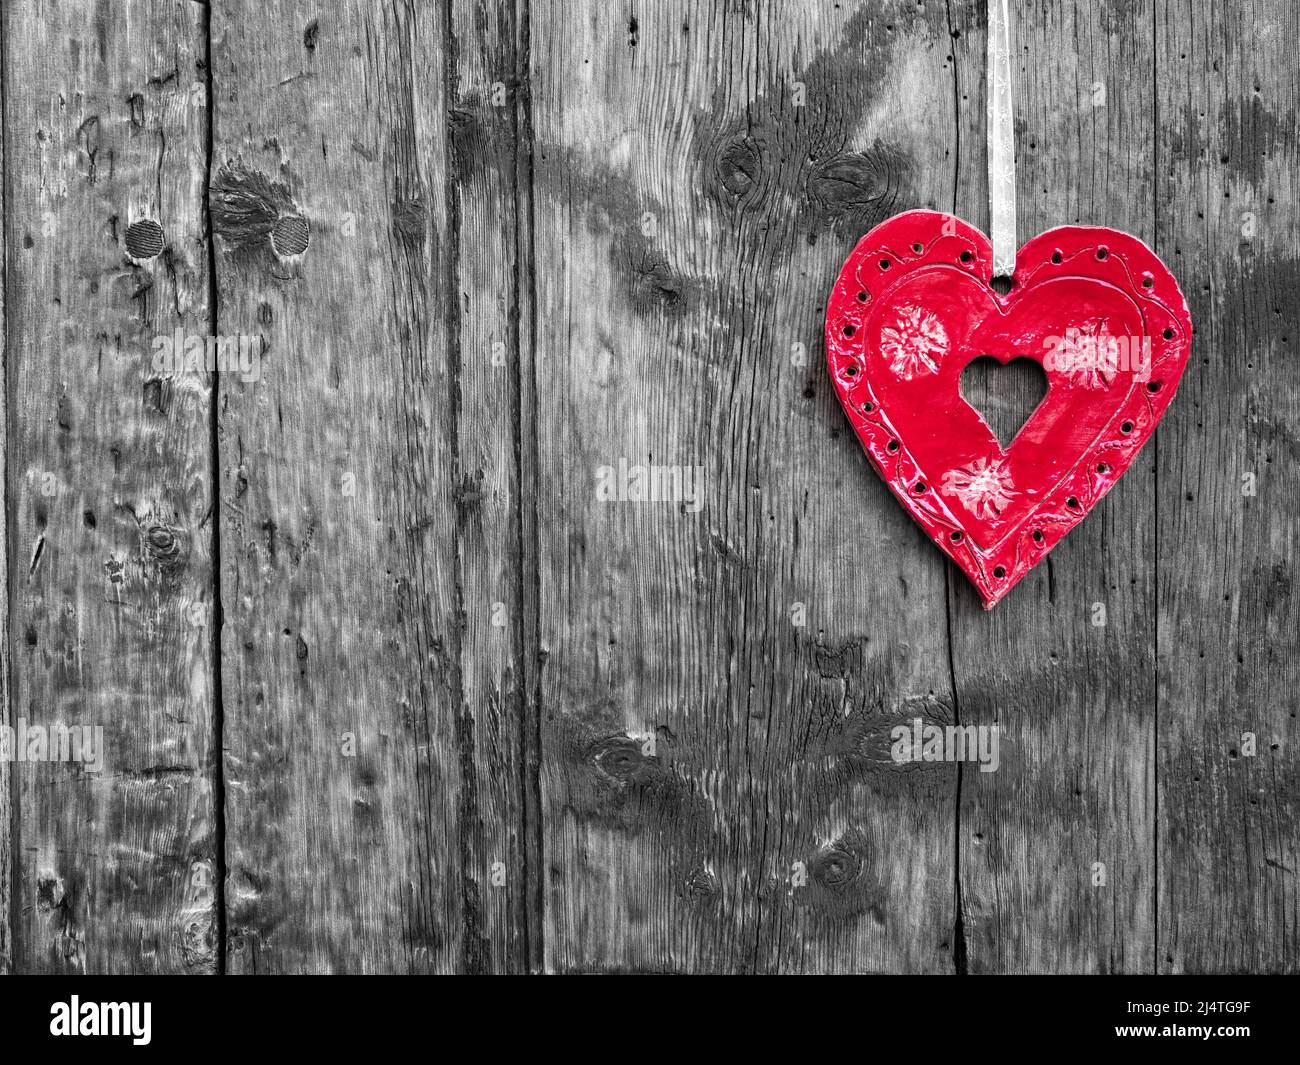 La Punt, Suisse - 29 septembre 2021 : coeur rouge décoratif accroché à un mur en bois Banque D'Images